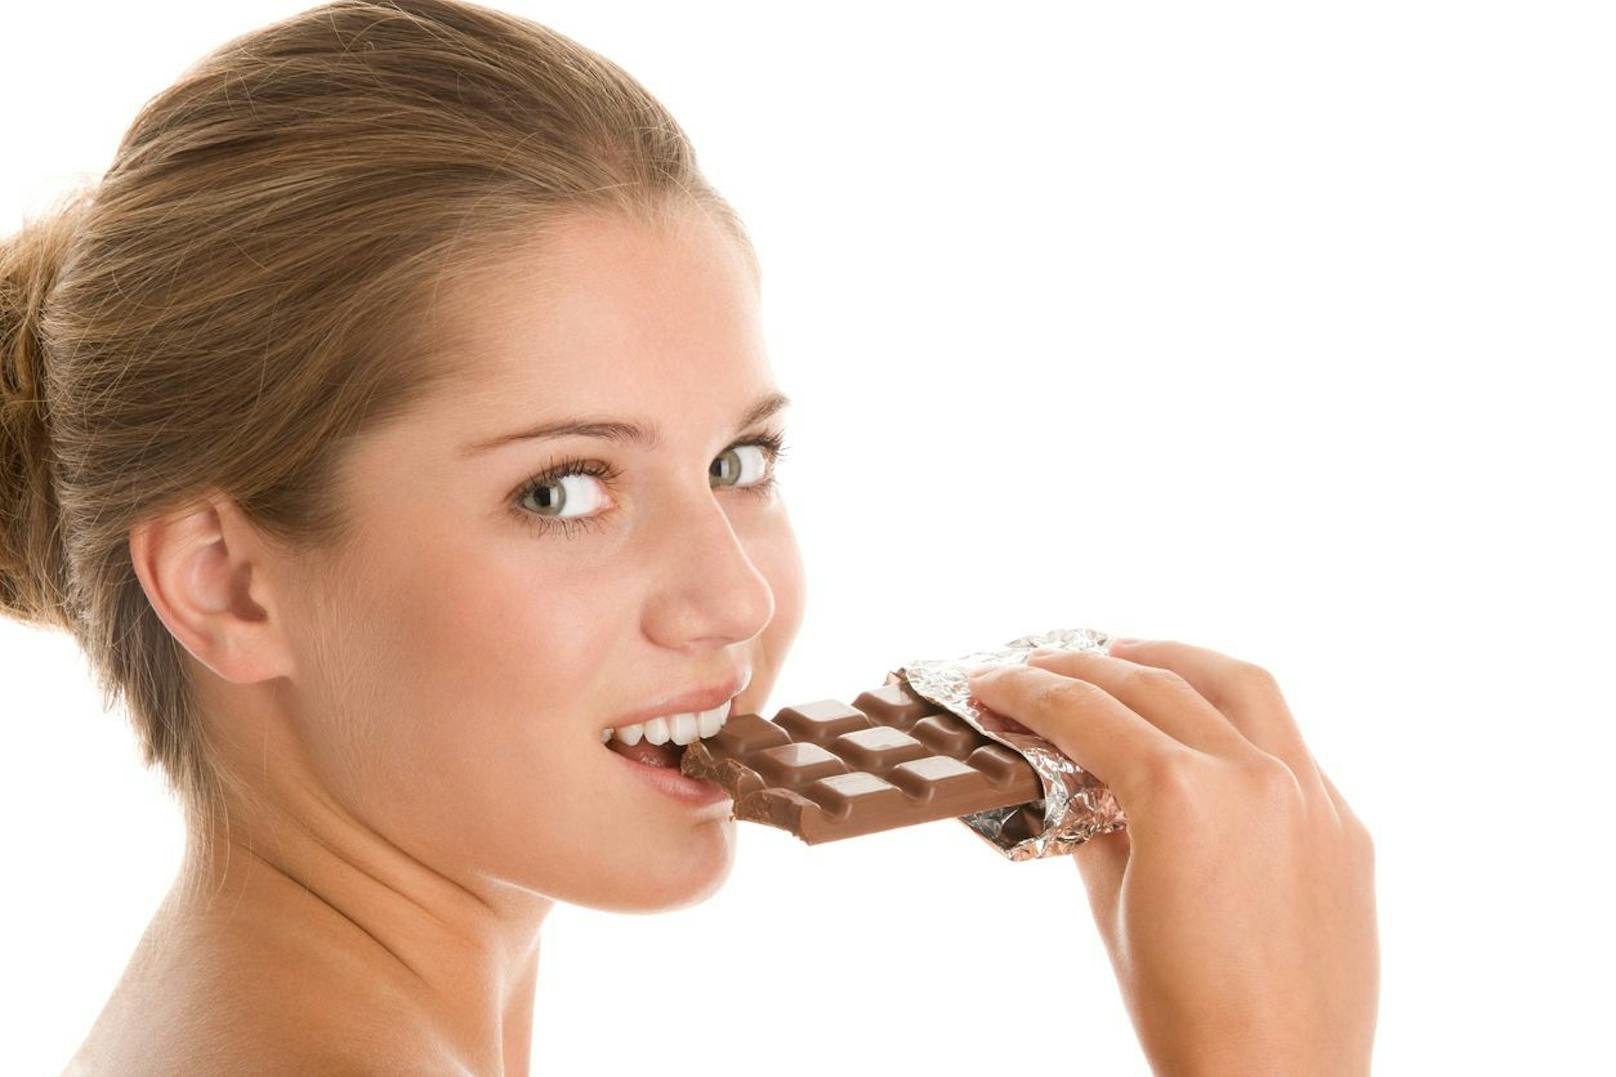 Gesund! So viel Schokolade empfehlen Forscher pro Woche